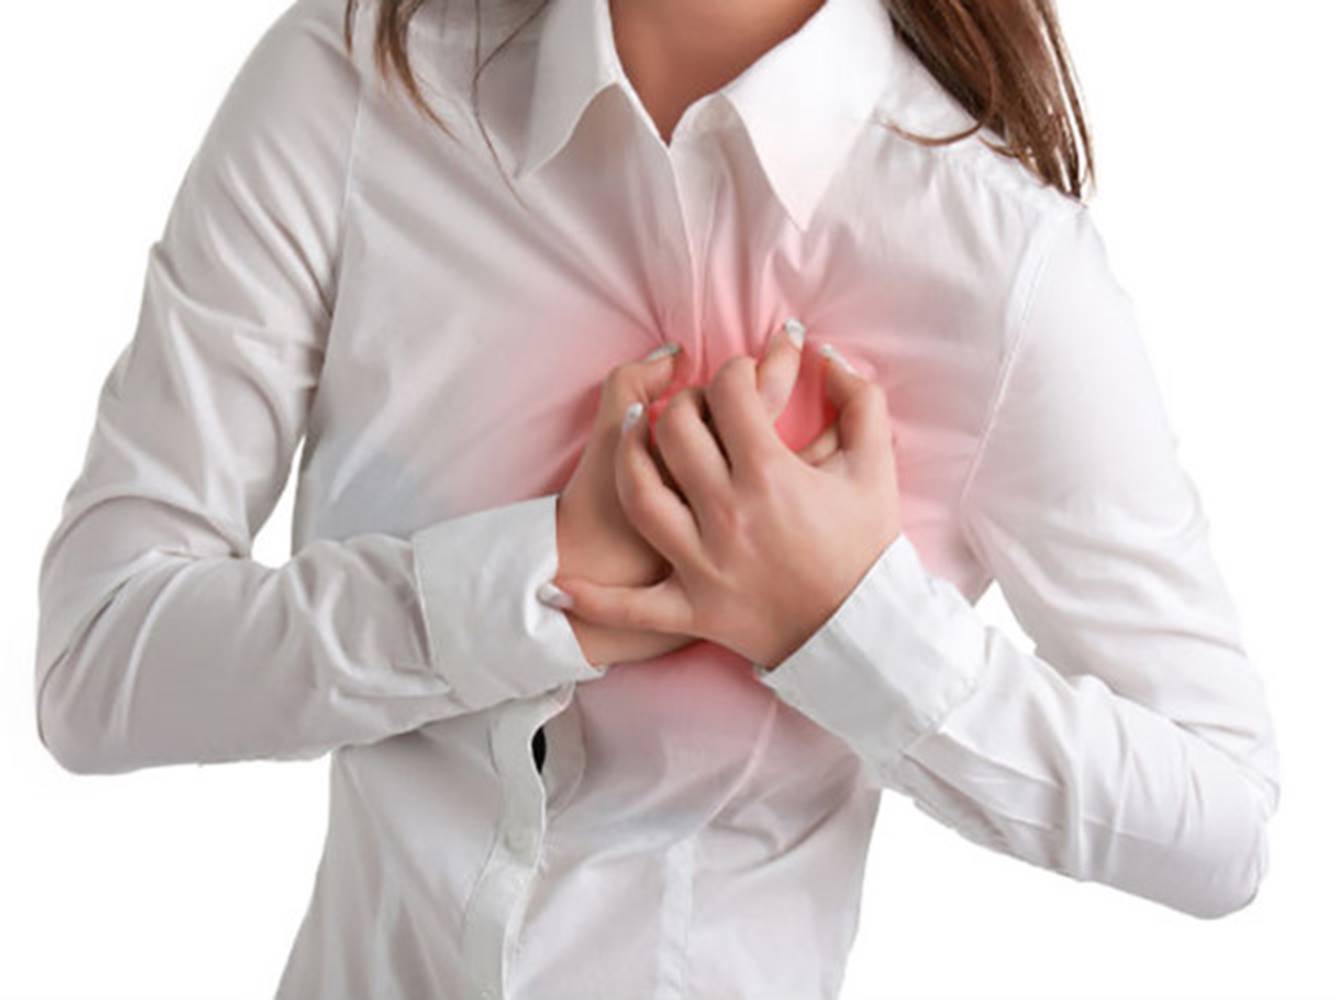   Các bệnh tim mạch có thể gây ra cơn đau ngực  